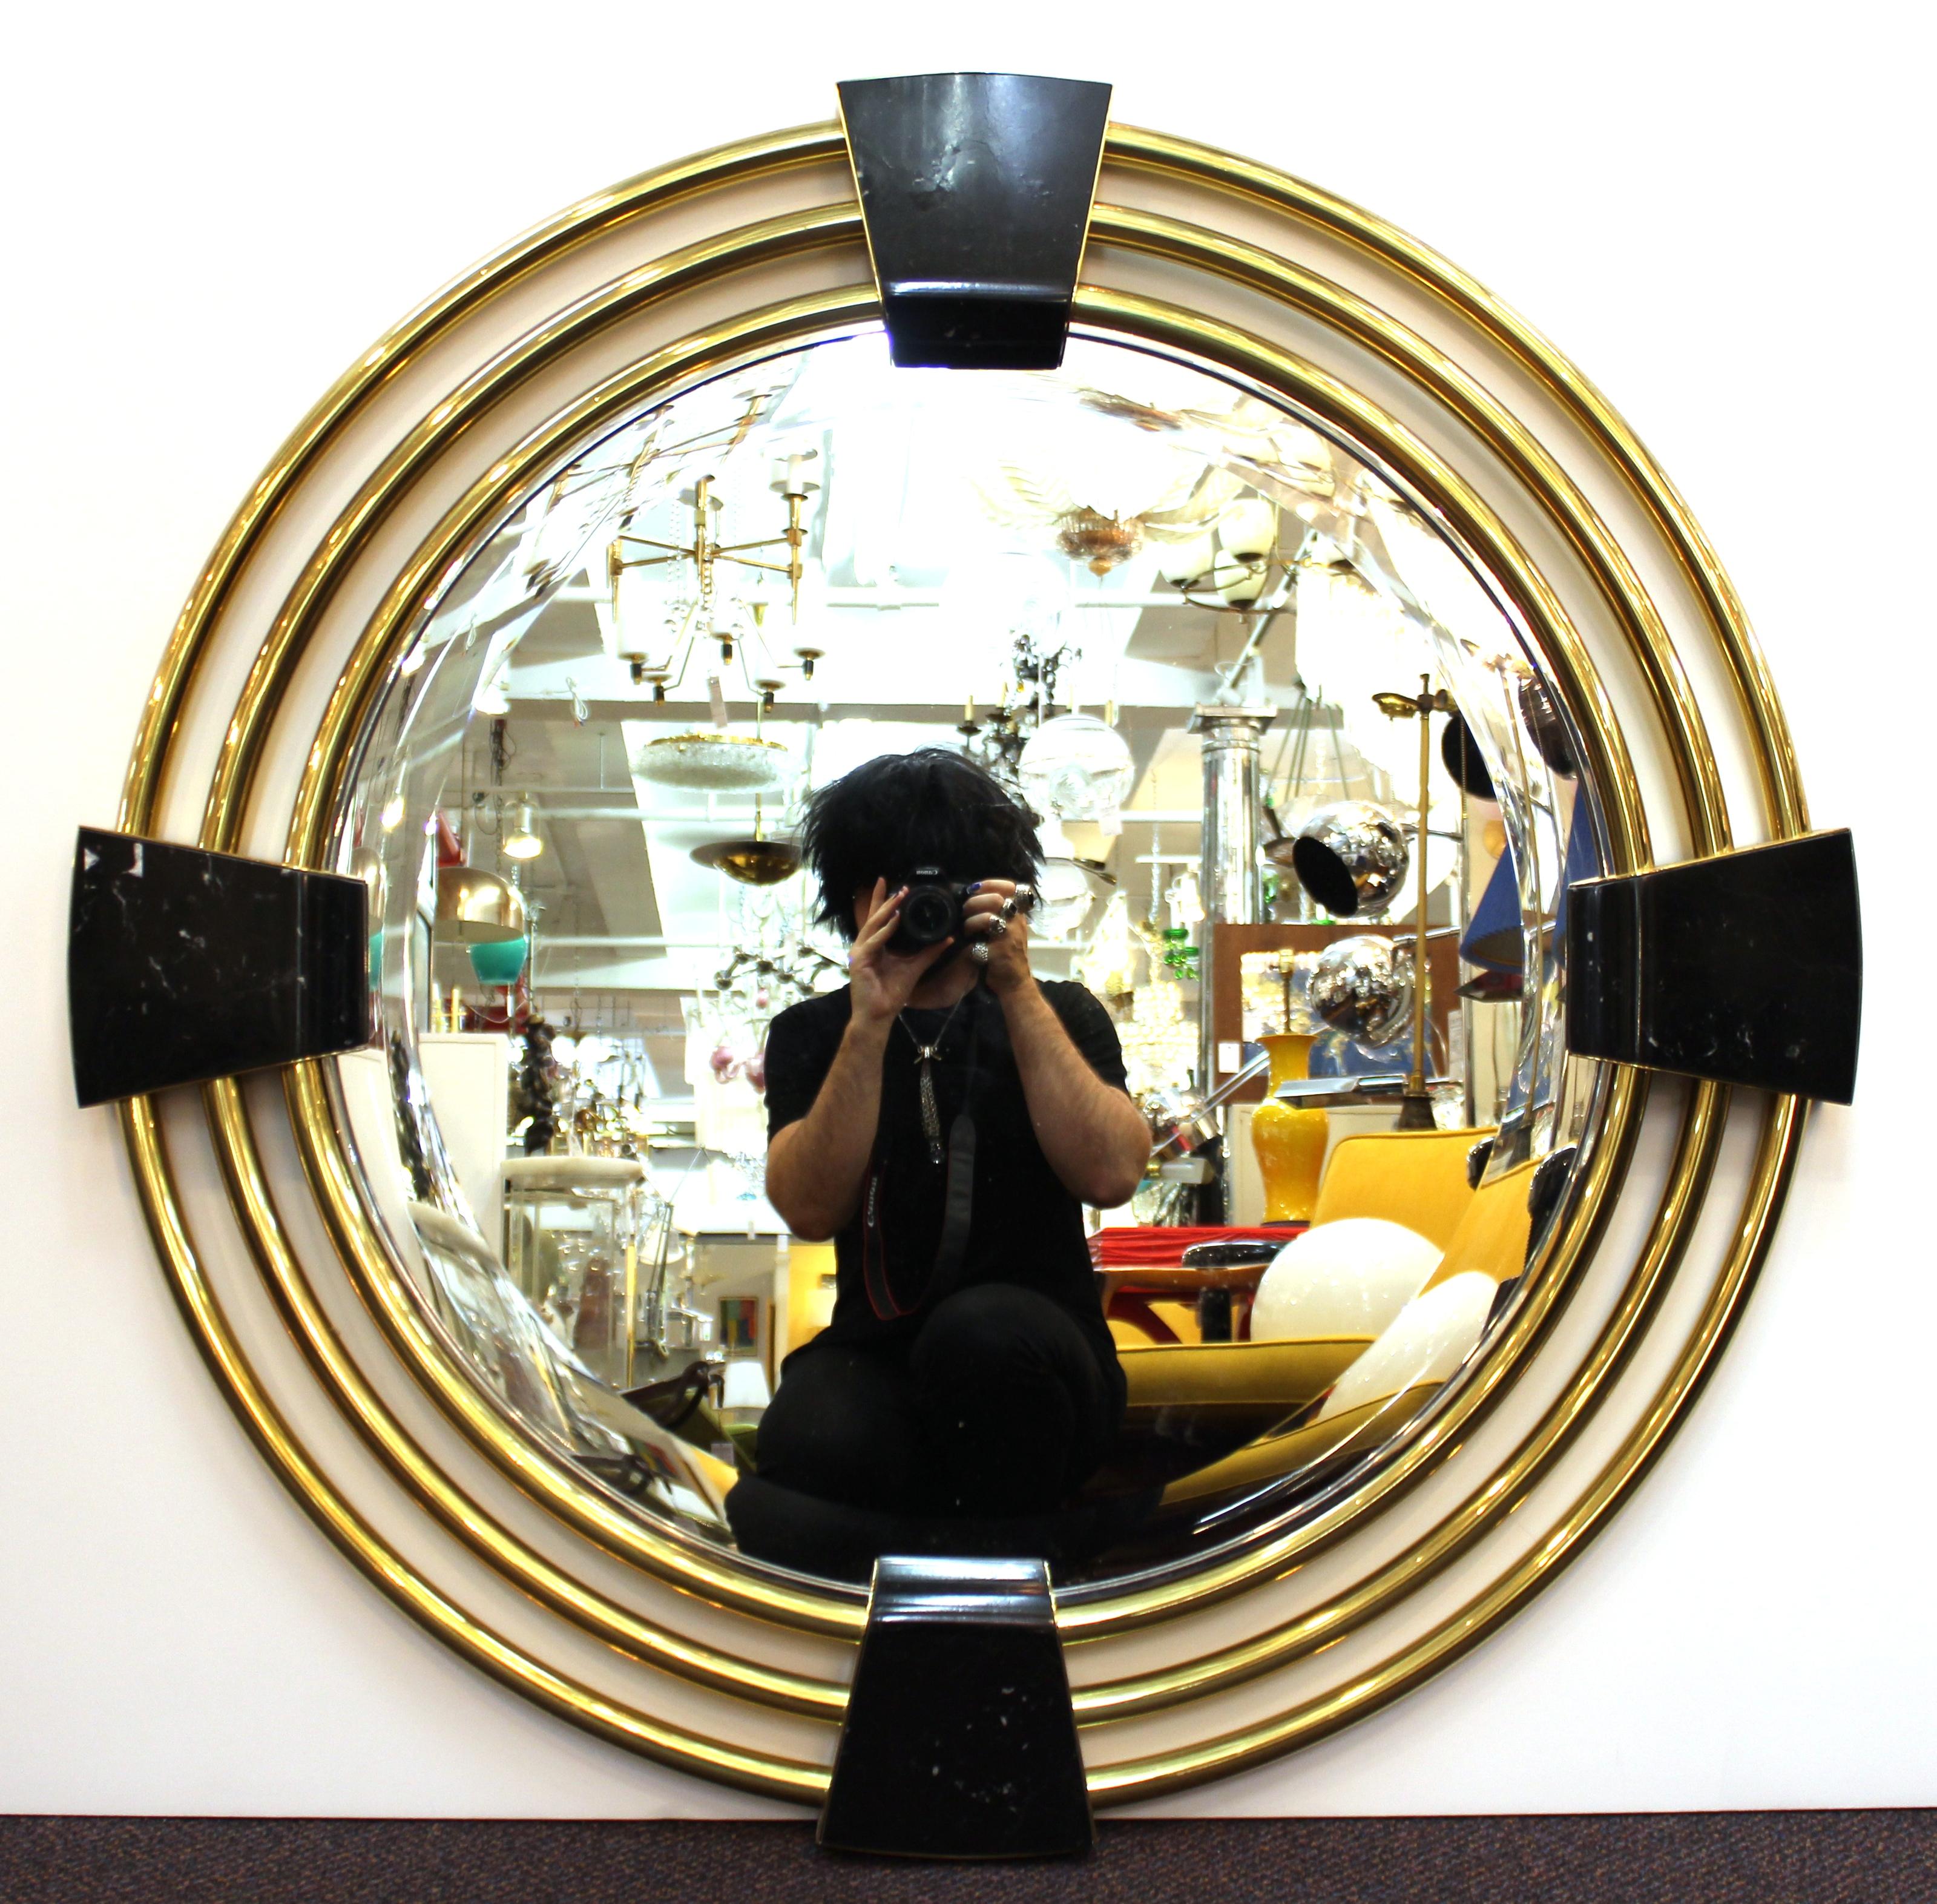 Miroir rond moderne, avec des éléments circulaires concentriques en laiton encadrant le panneau du miroir, maintenu par quatre pièces en pierre. La pièce est en très bon état, avec une usure appropriée à l'âge sur les surfaces en métal et en pierre.